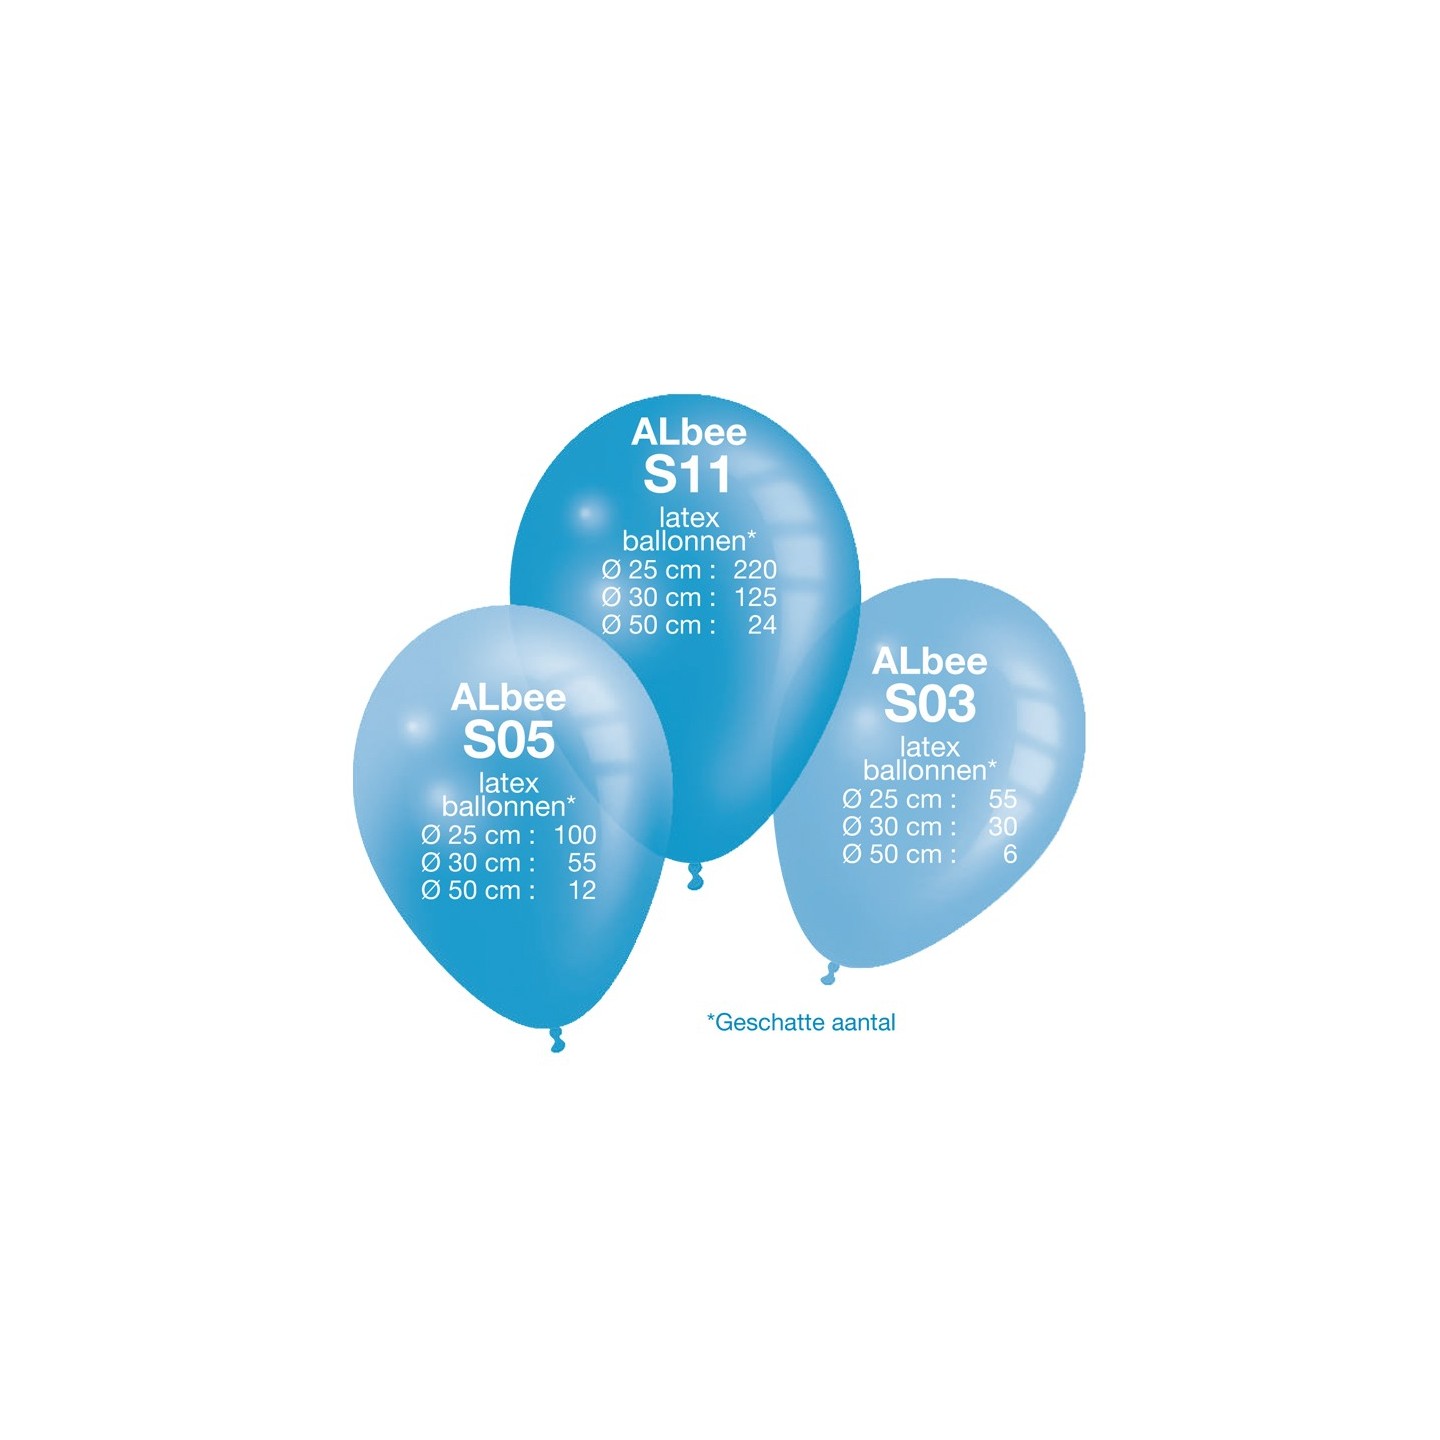 Direct Interpreteren mentaal Helium tank kopen ? |50 ballonnen - Jokershop.be - Helium gas